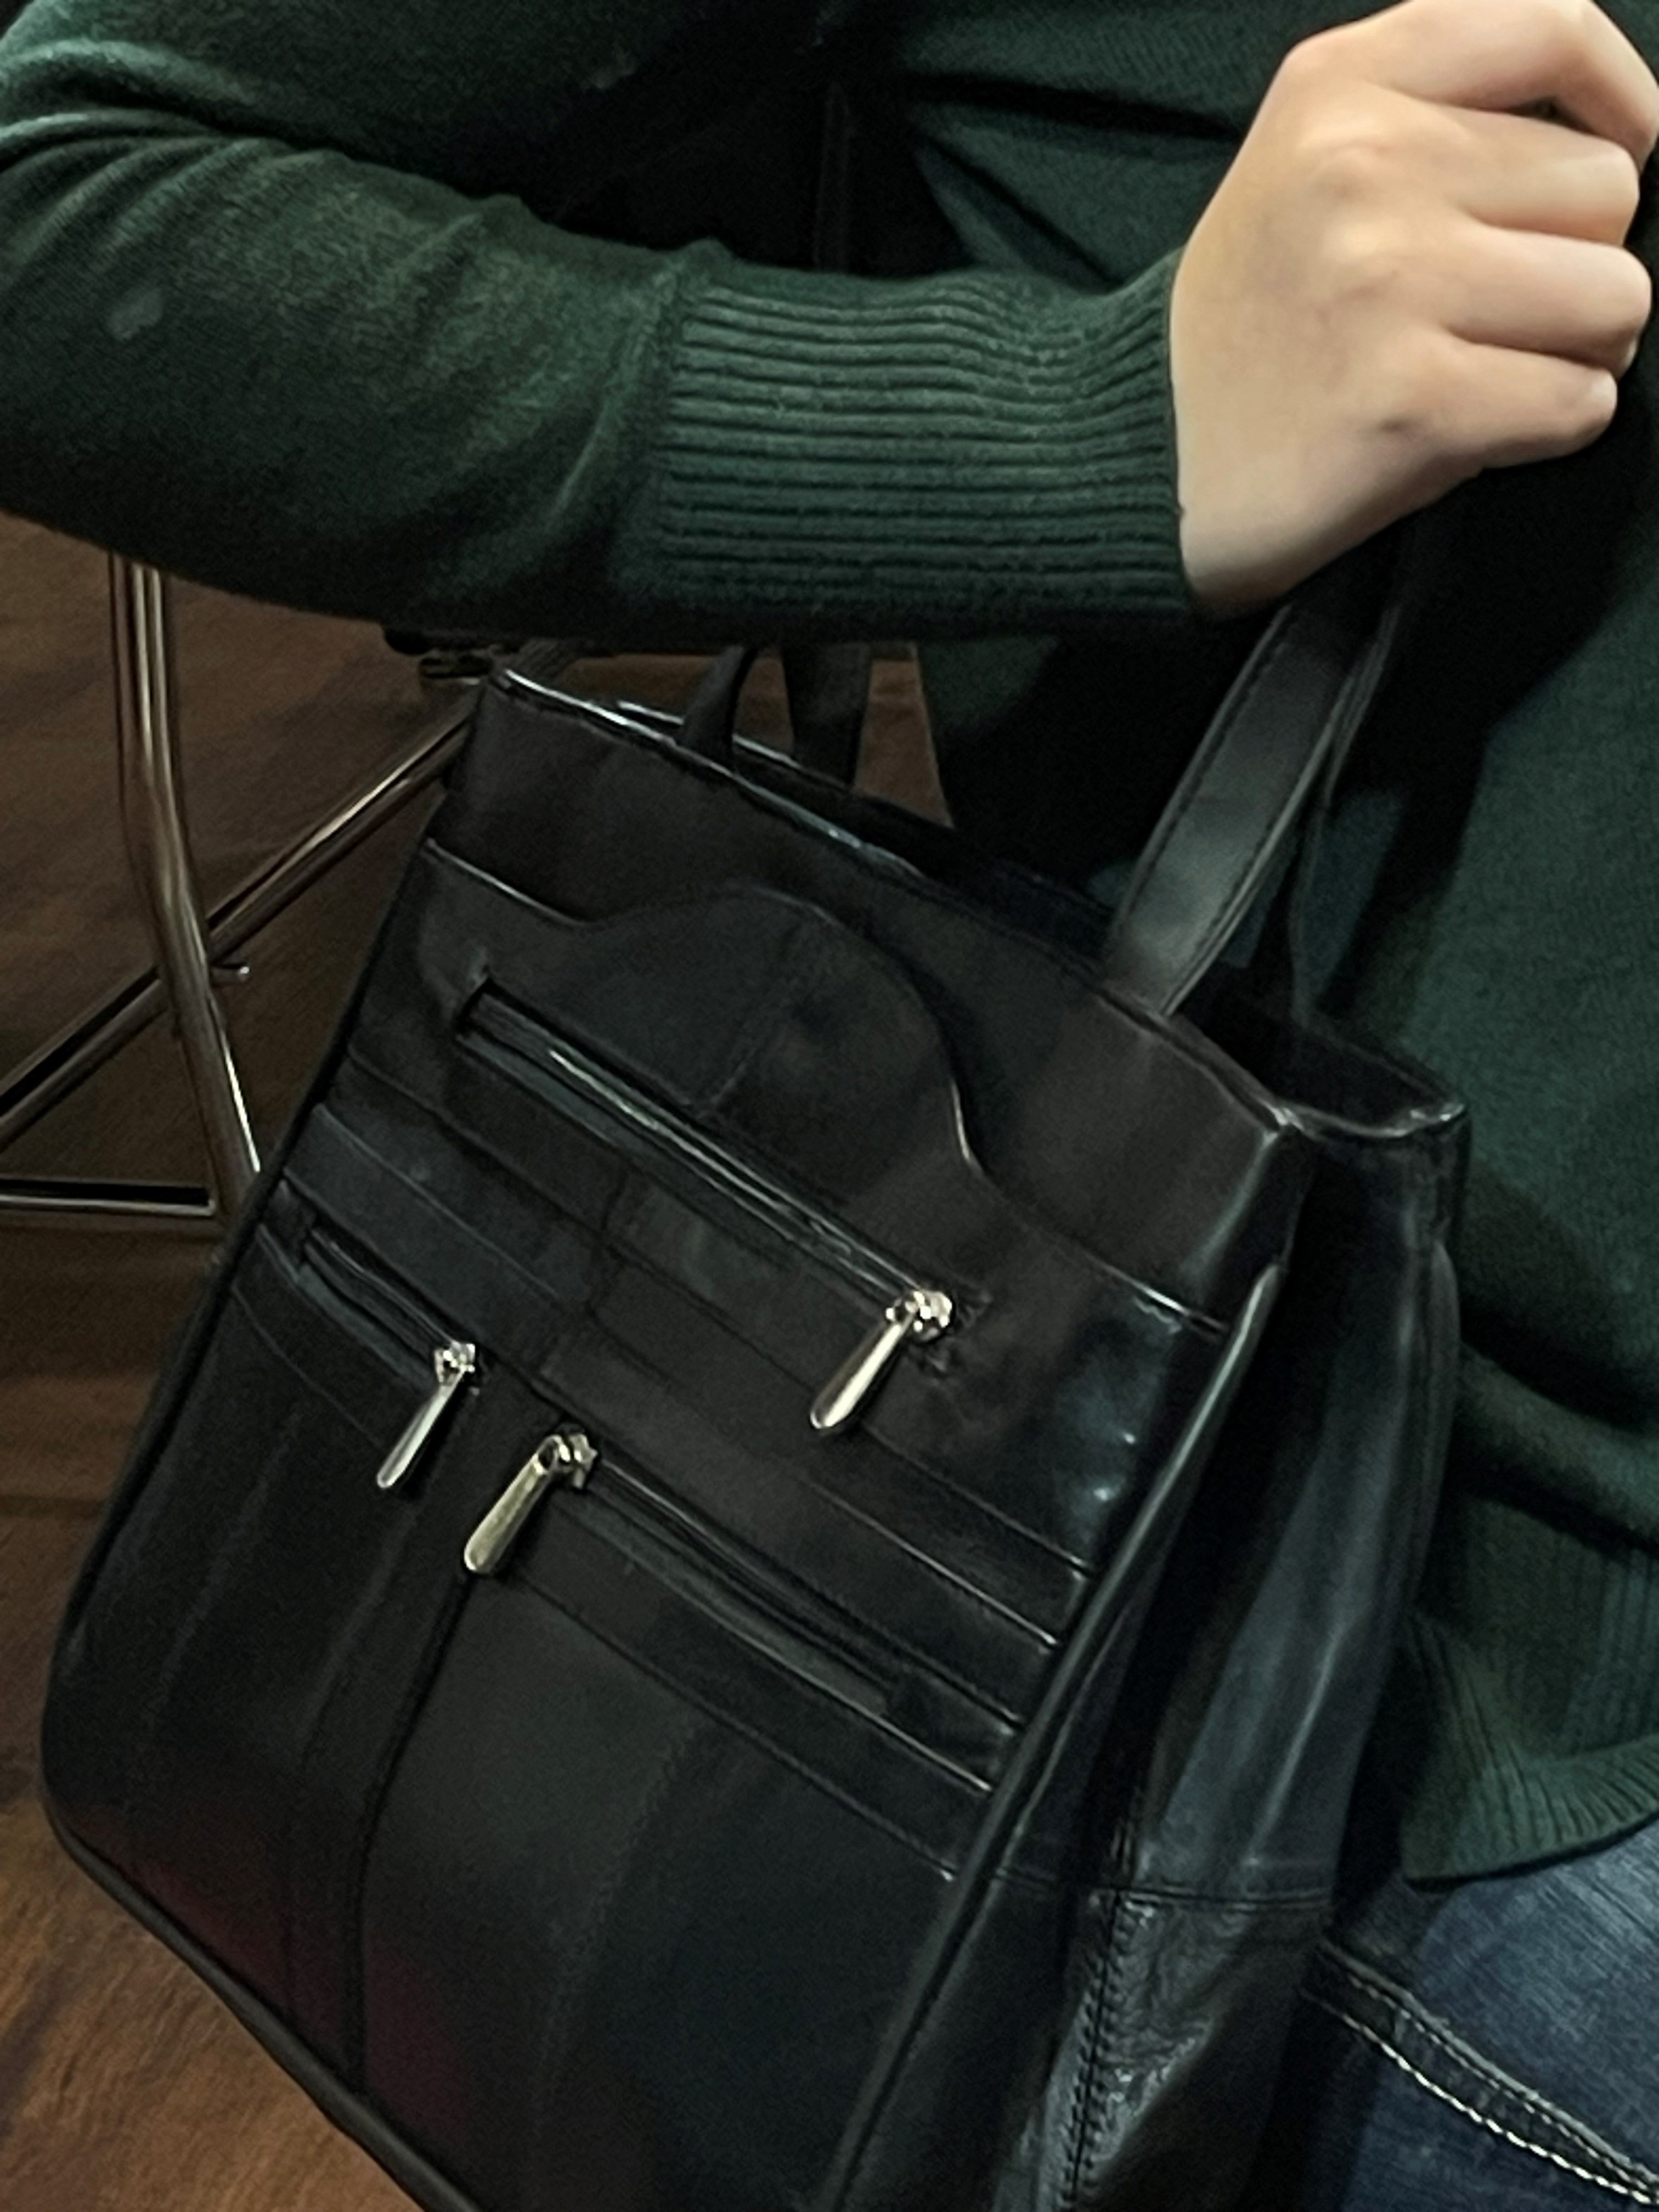 BOL Leather Shoulder Bag with Multiple Pockets